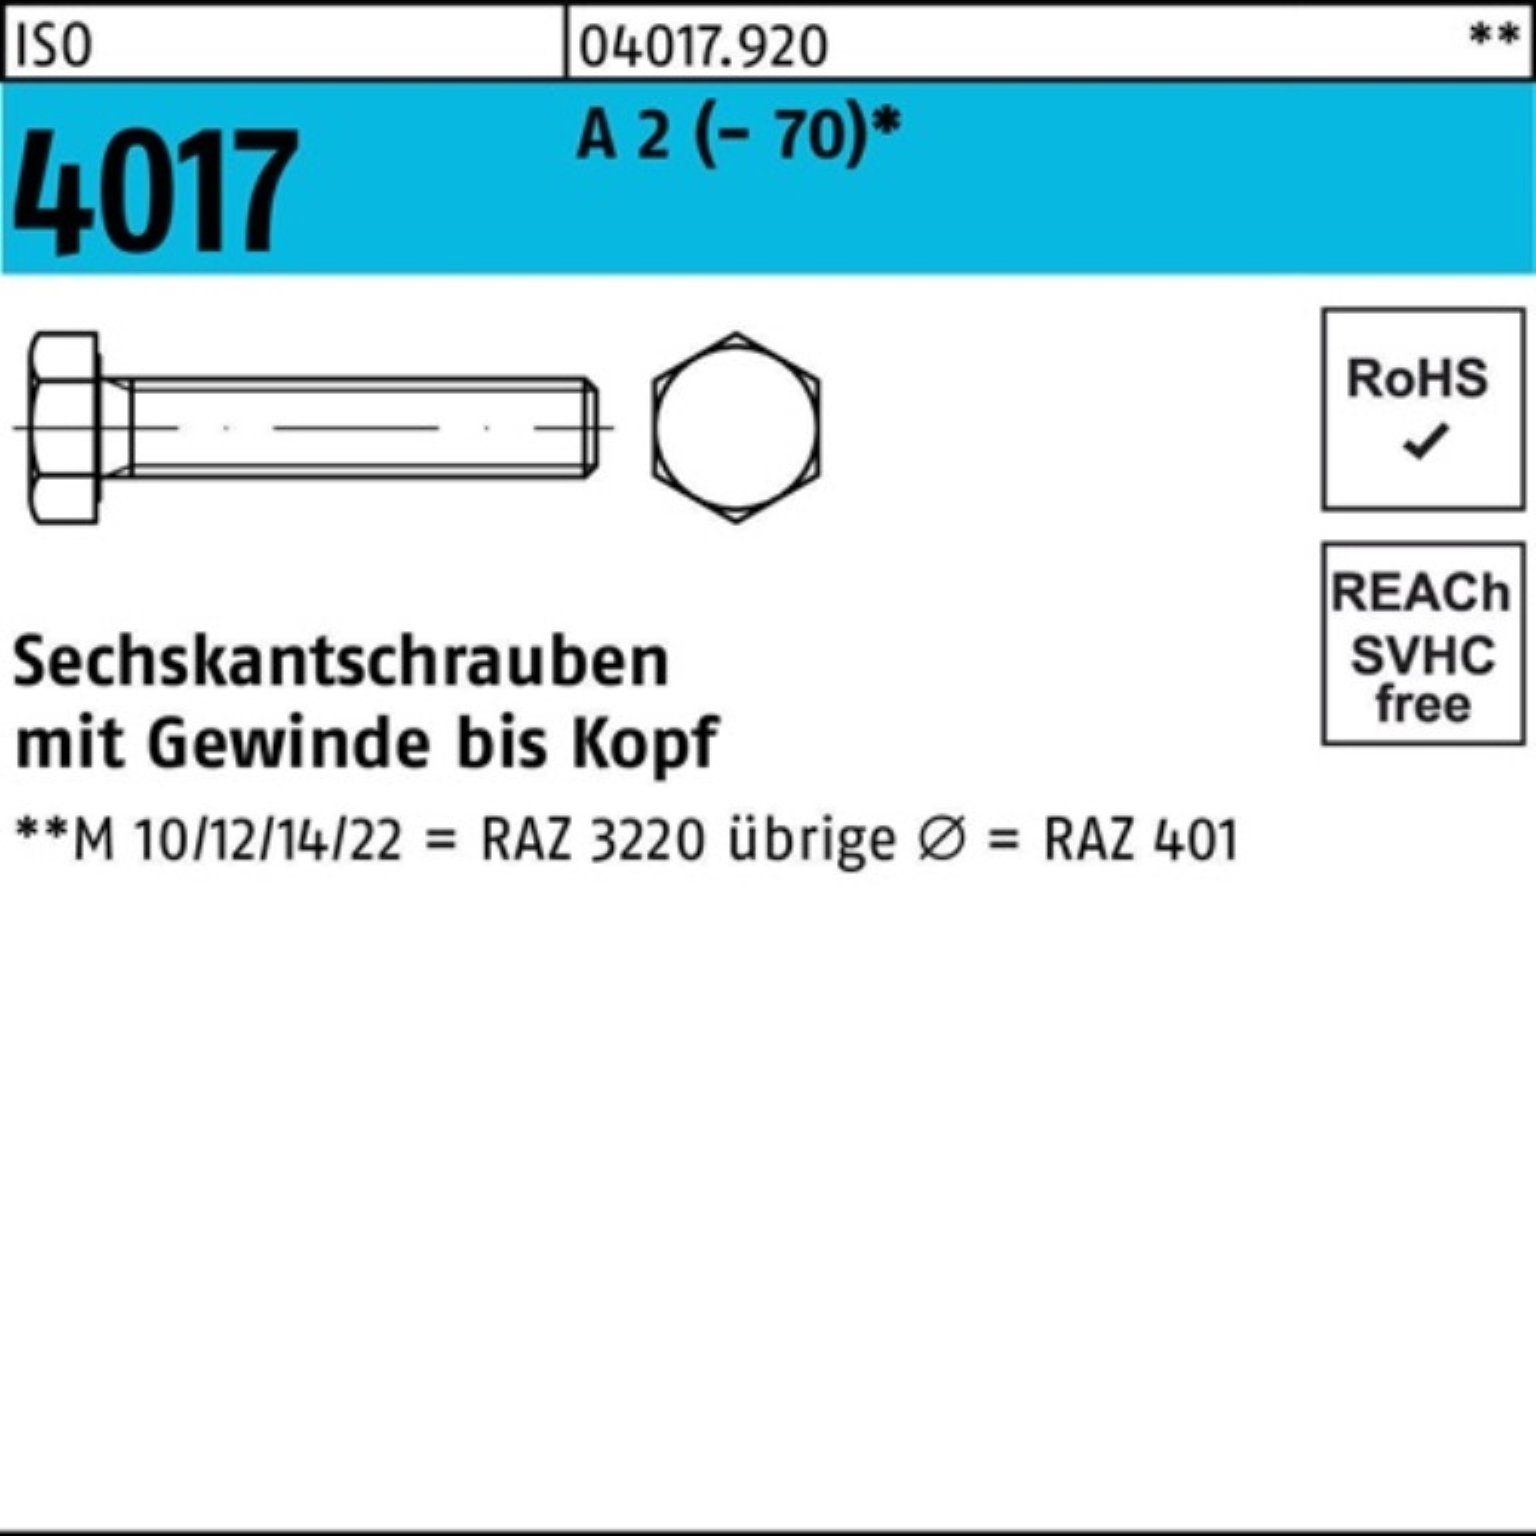 Bufab Sechskantschraube (70) ISO VG 100er 1 M12x A 2 160 Stück Pack 4017 Sechskantschraube